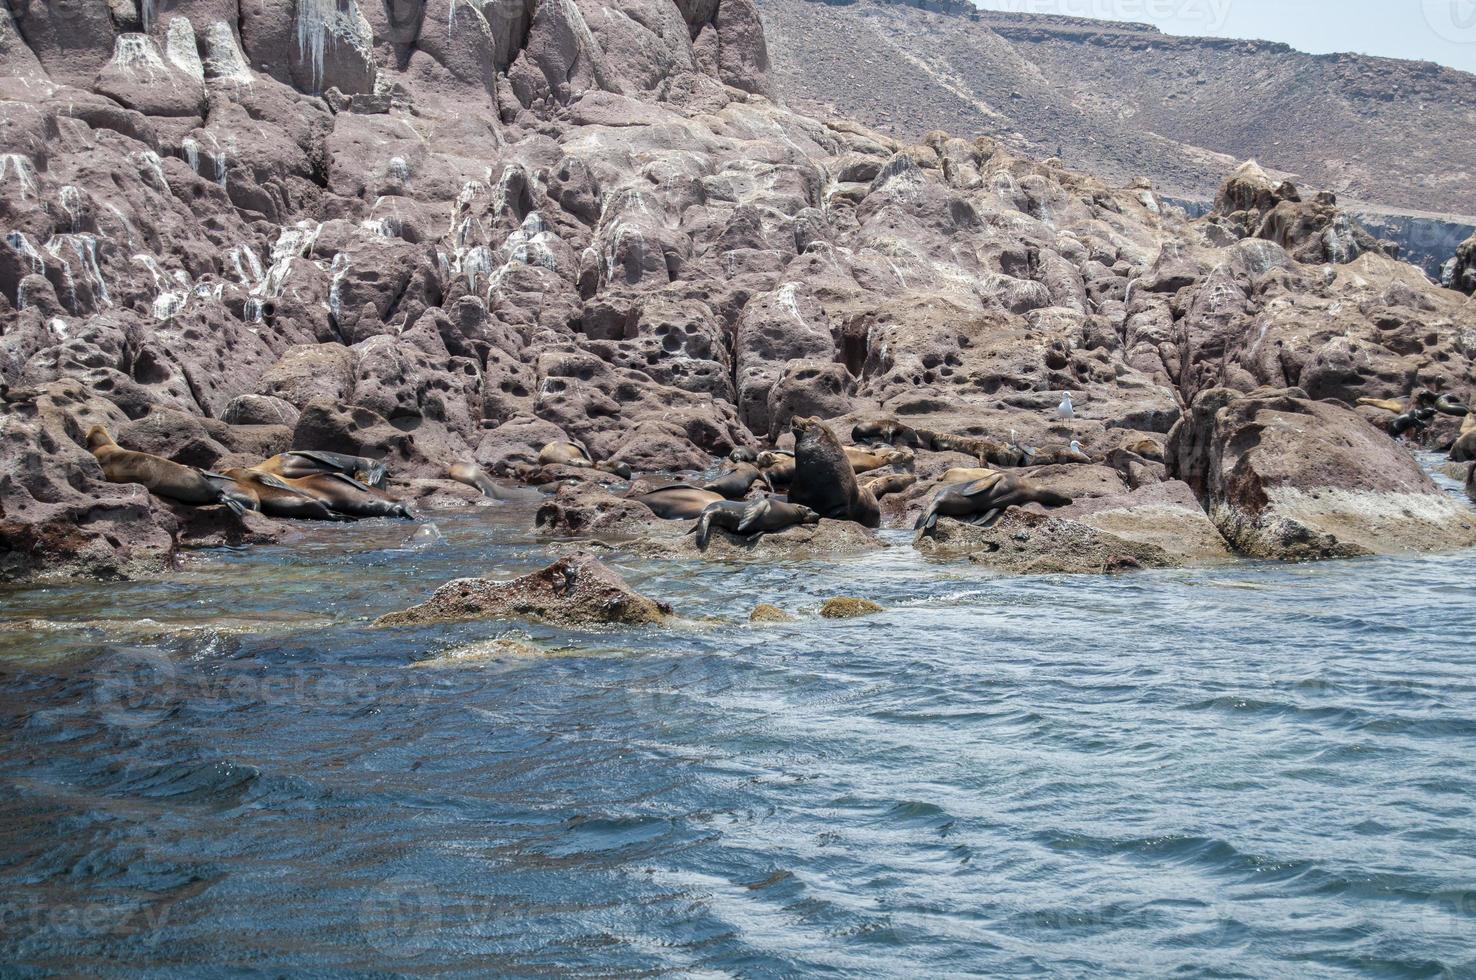 Le foche sull'archipielago isla espiritu santo a la paz, baja california foto